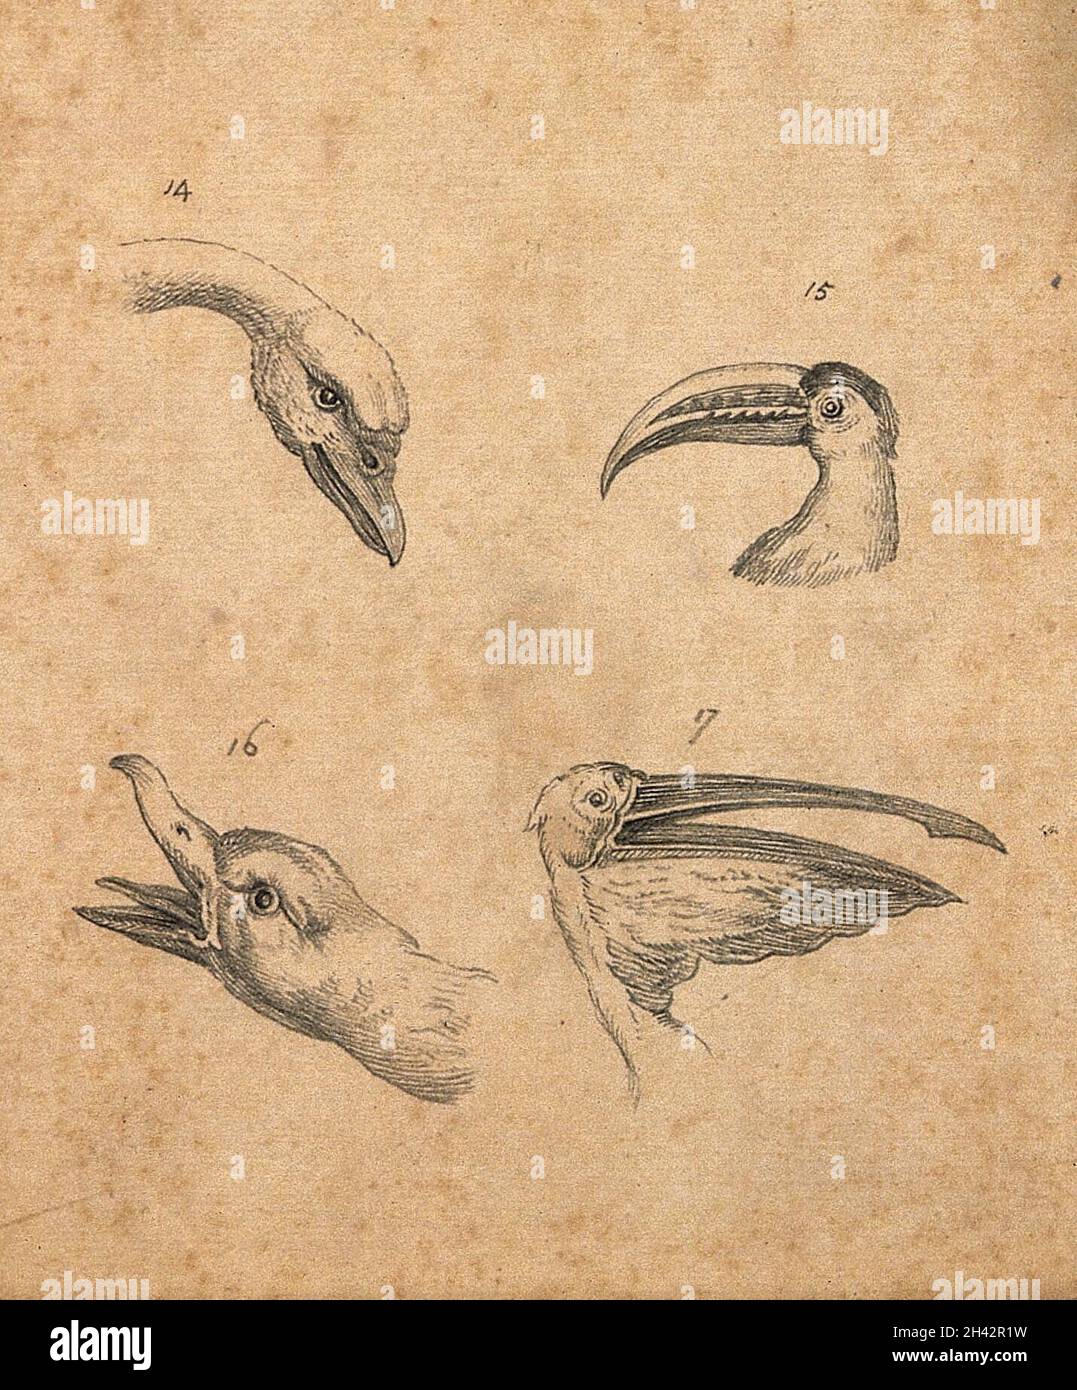 Vier Vogelköpfe: Ein Schwan, ein polyphemus, eine wilde Ente und ein Pelikan. Zeichnung, c. 1789. Stockfoto